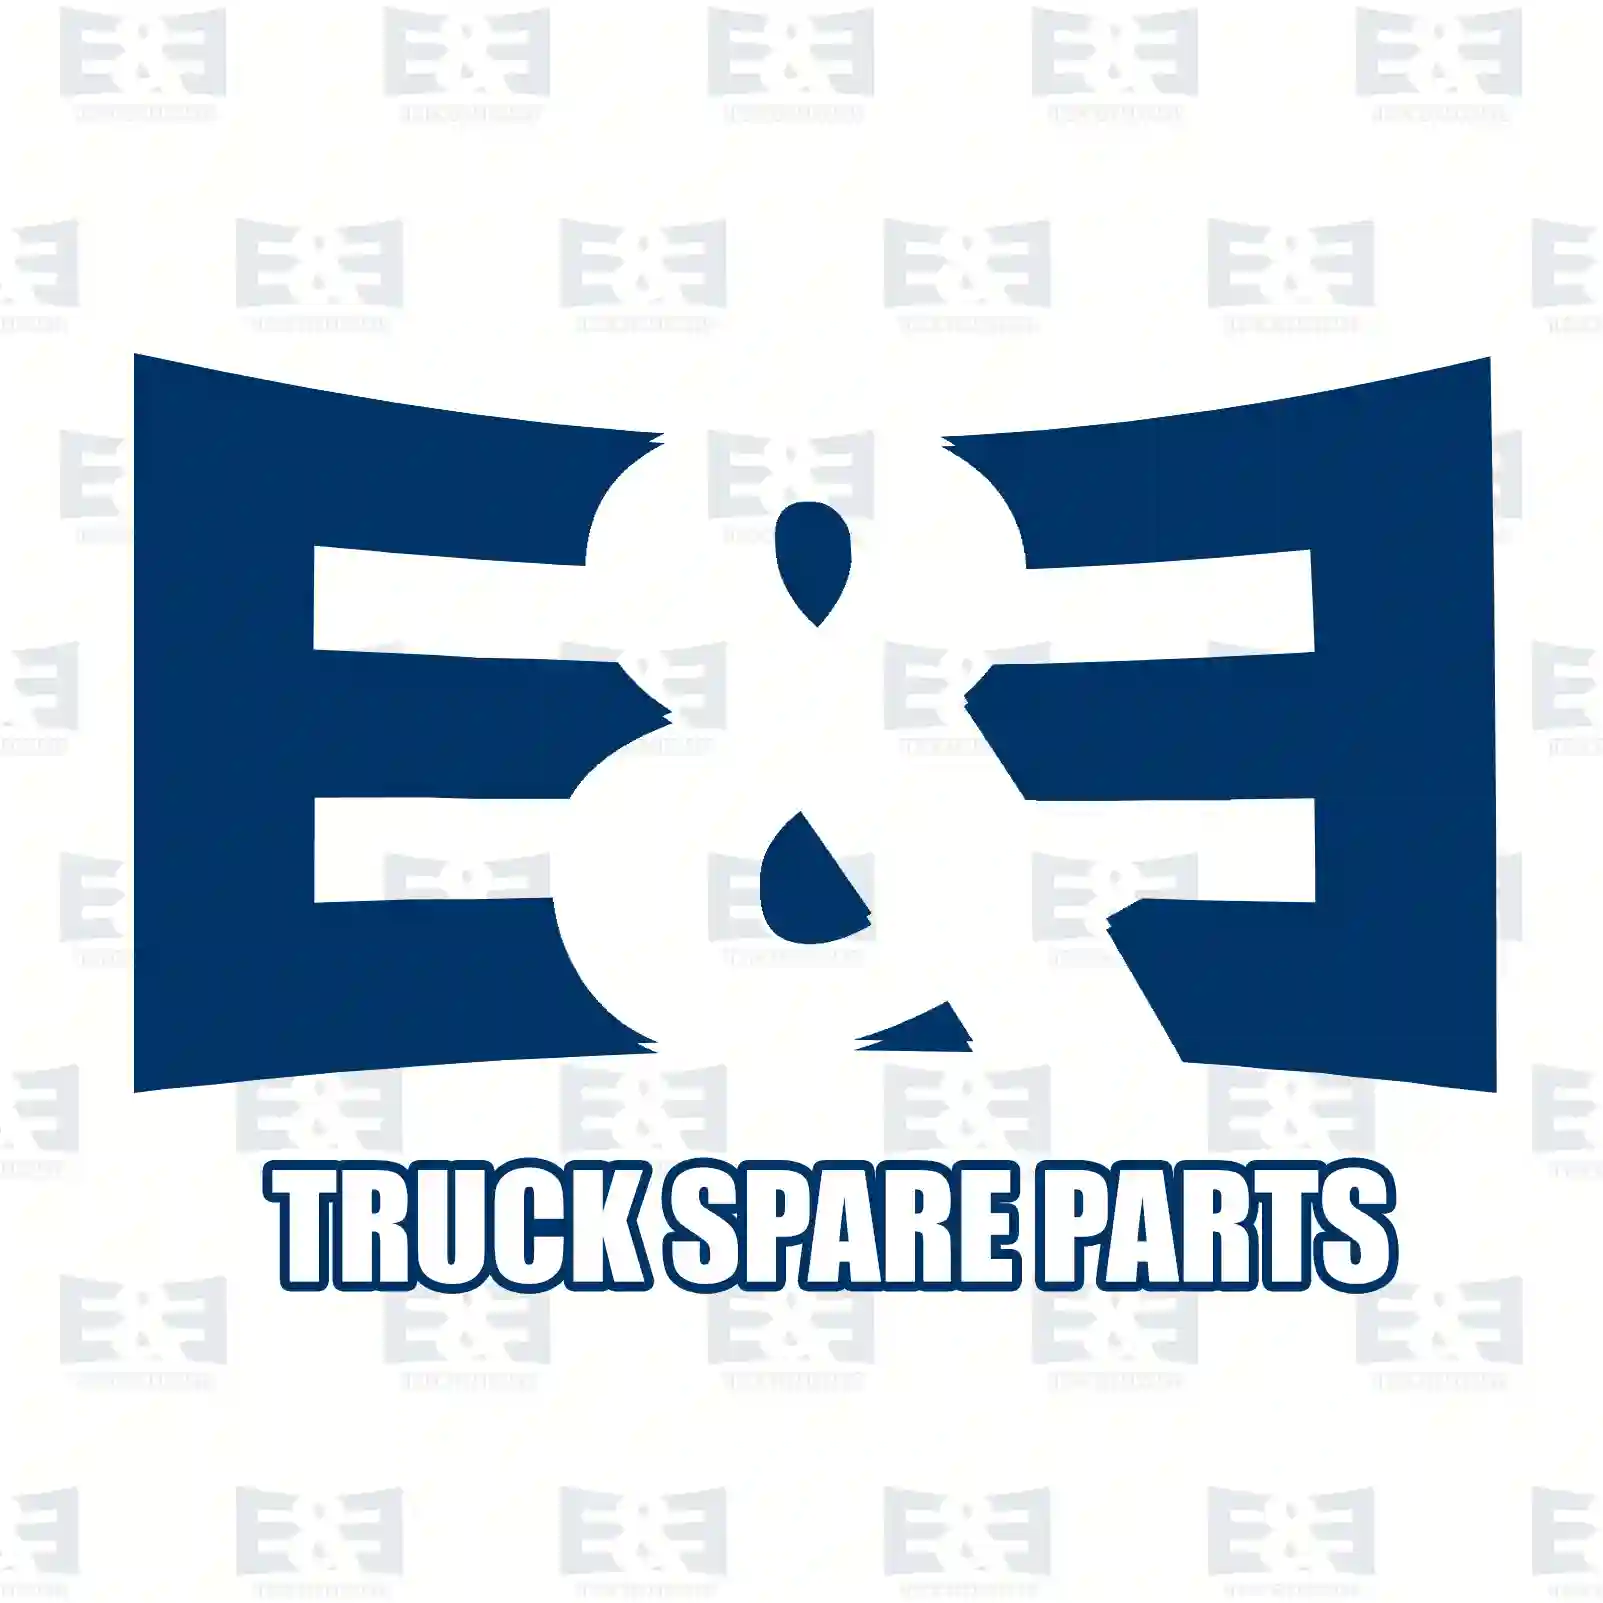 Brake disc, 2E2294843, 02996131, 2996131, 504121605, 5801639518, , , , , , ||  2E2294843 E&E Truck Spare Parts | Truck Spare Parts, Auotomotive Spare Parts Brake disc, 2E2294843, 02996131, 2996131, 504121605, 5801639518, , , , , , ||  2E2294843 E&E Truck Spare Parts | Truck Spare Parts, Auotomotive Spare Parts